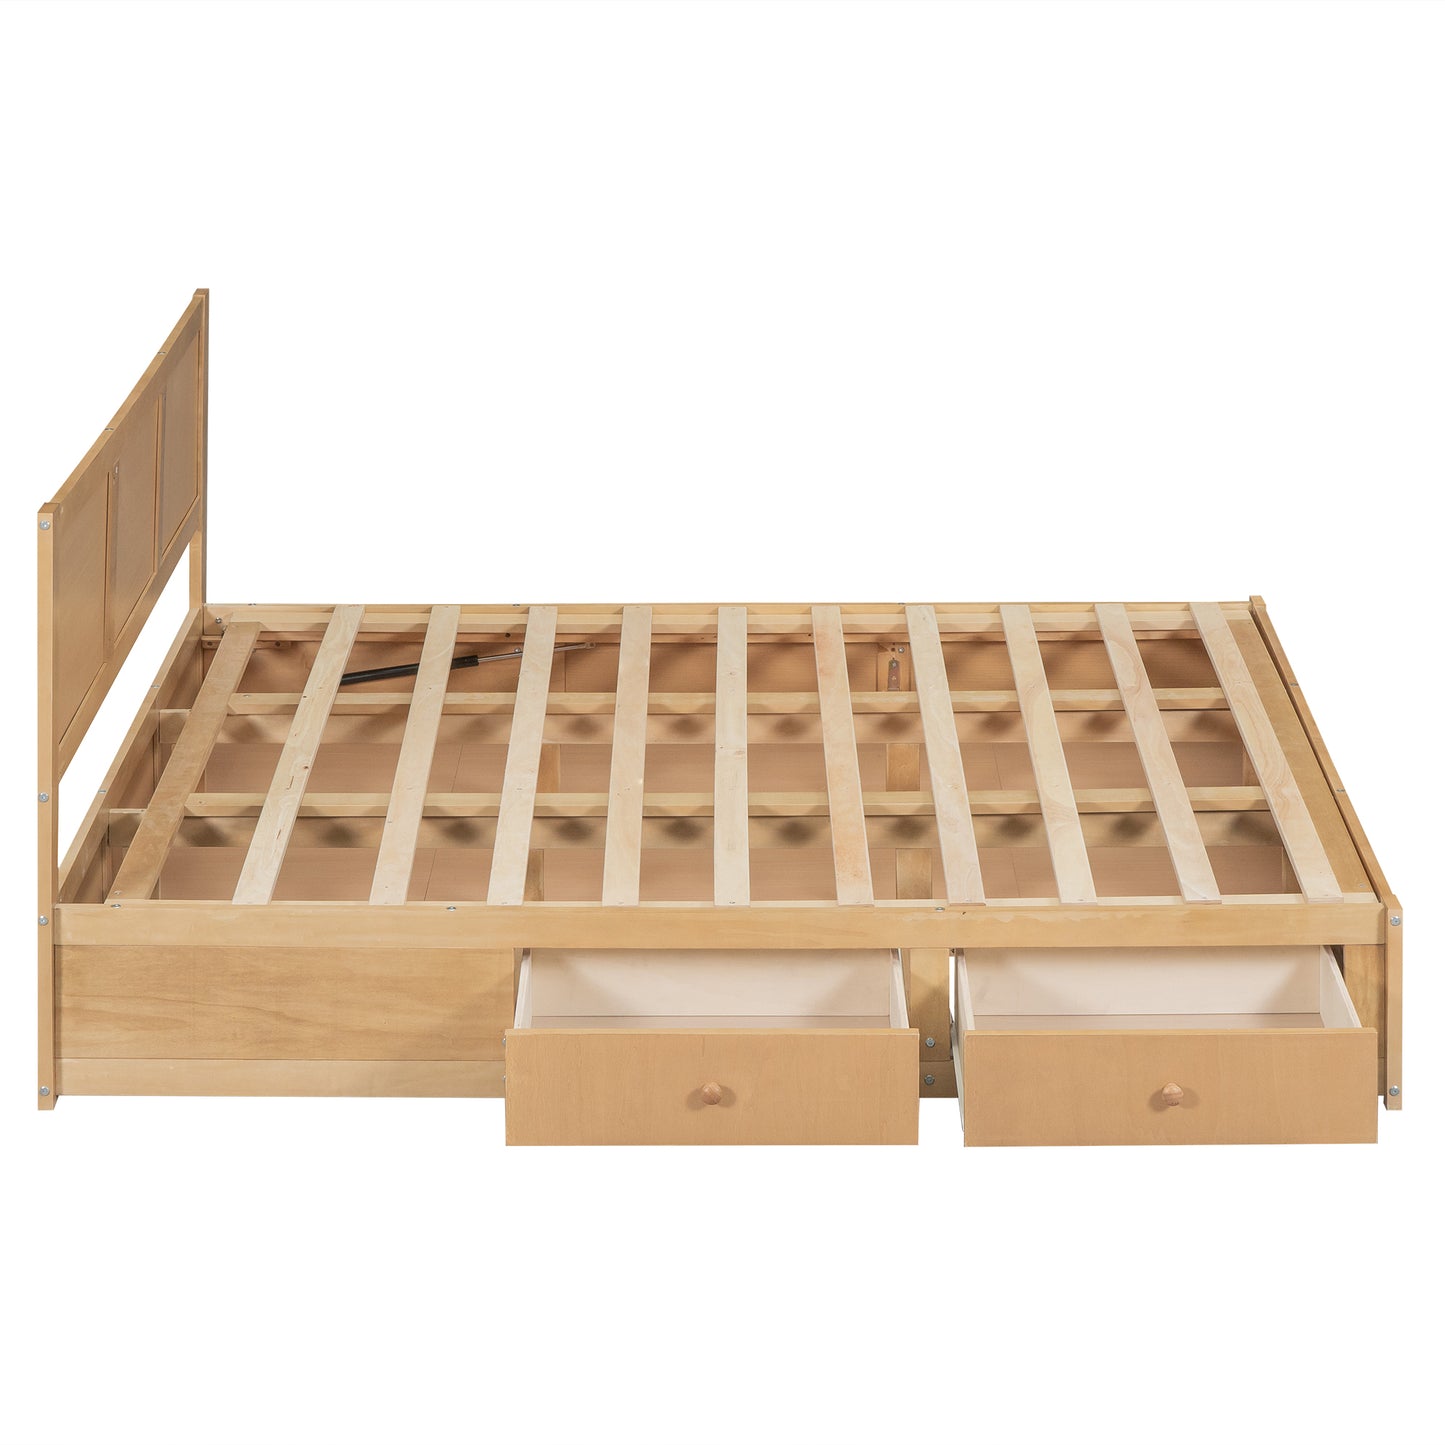 Lit plateforme en bois queen size avec rangement en dessous et 2 tiroirs, couleur bois